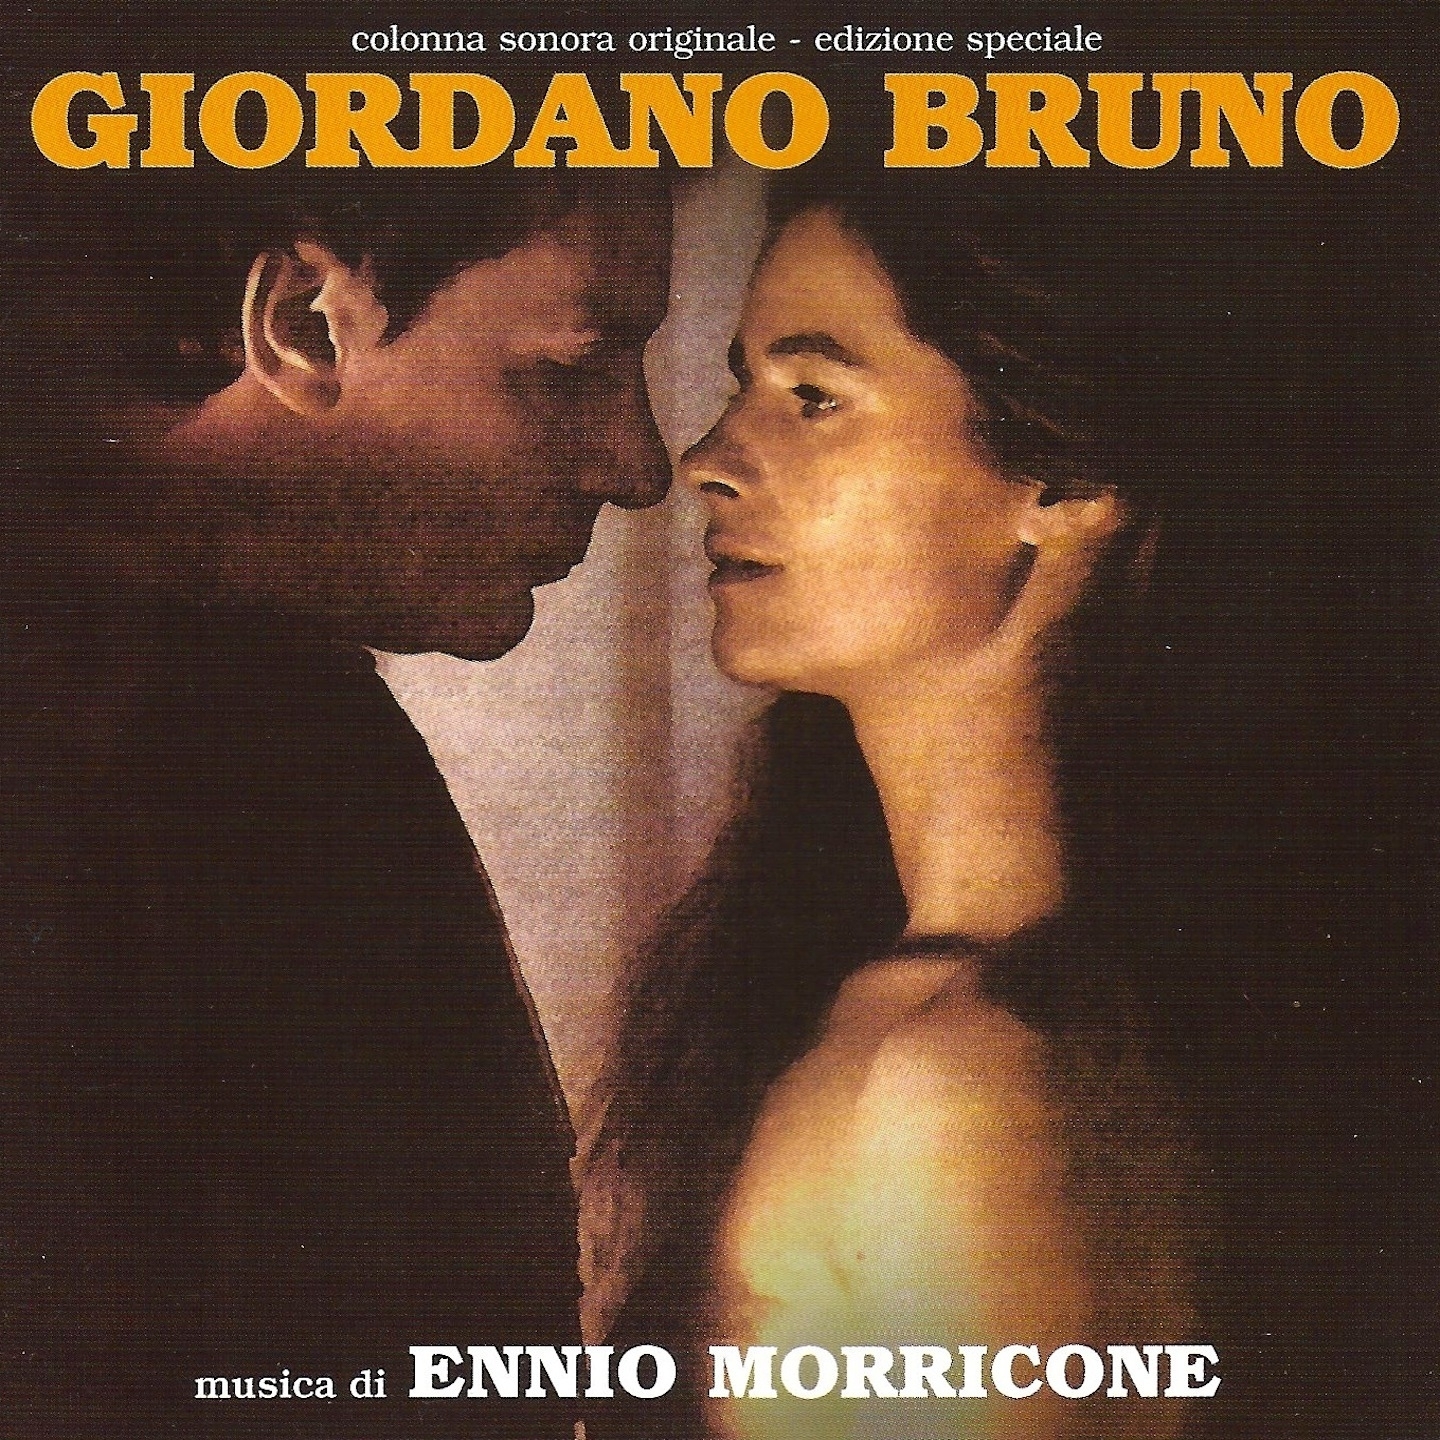 Giordano bruno, No. 3